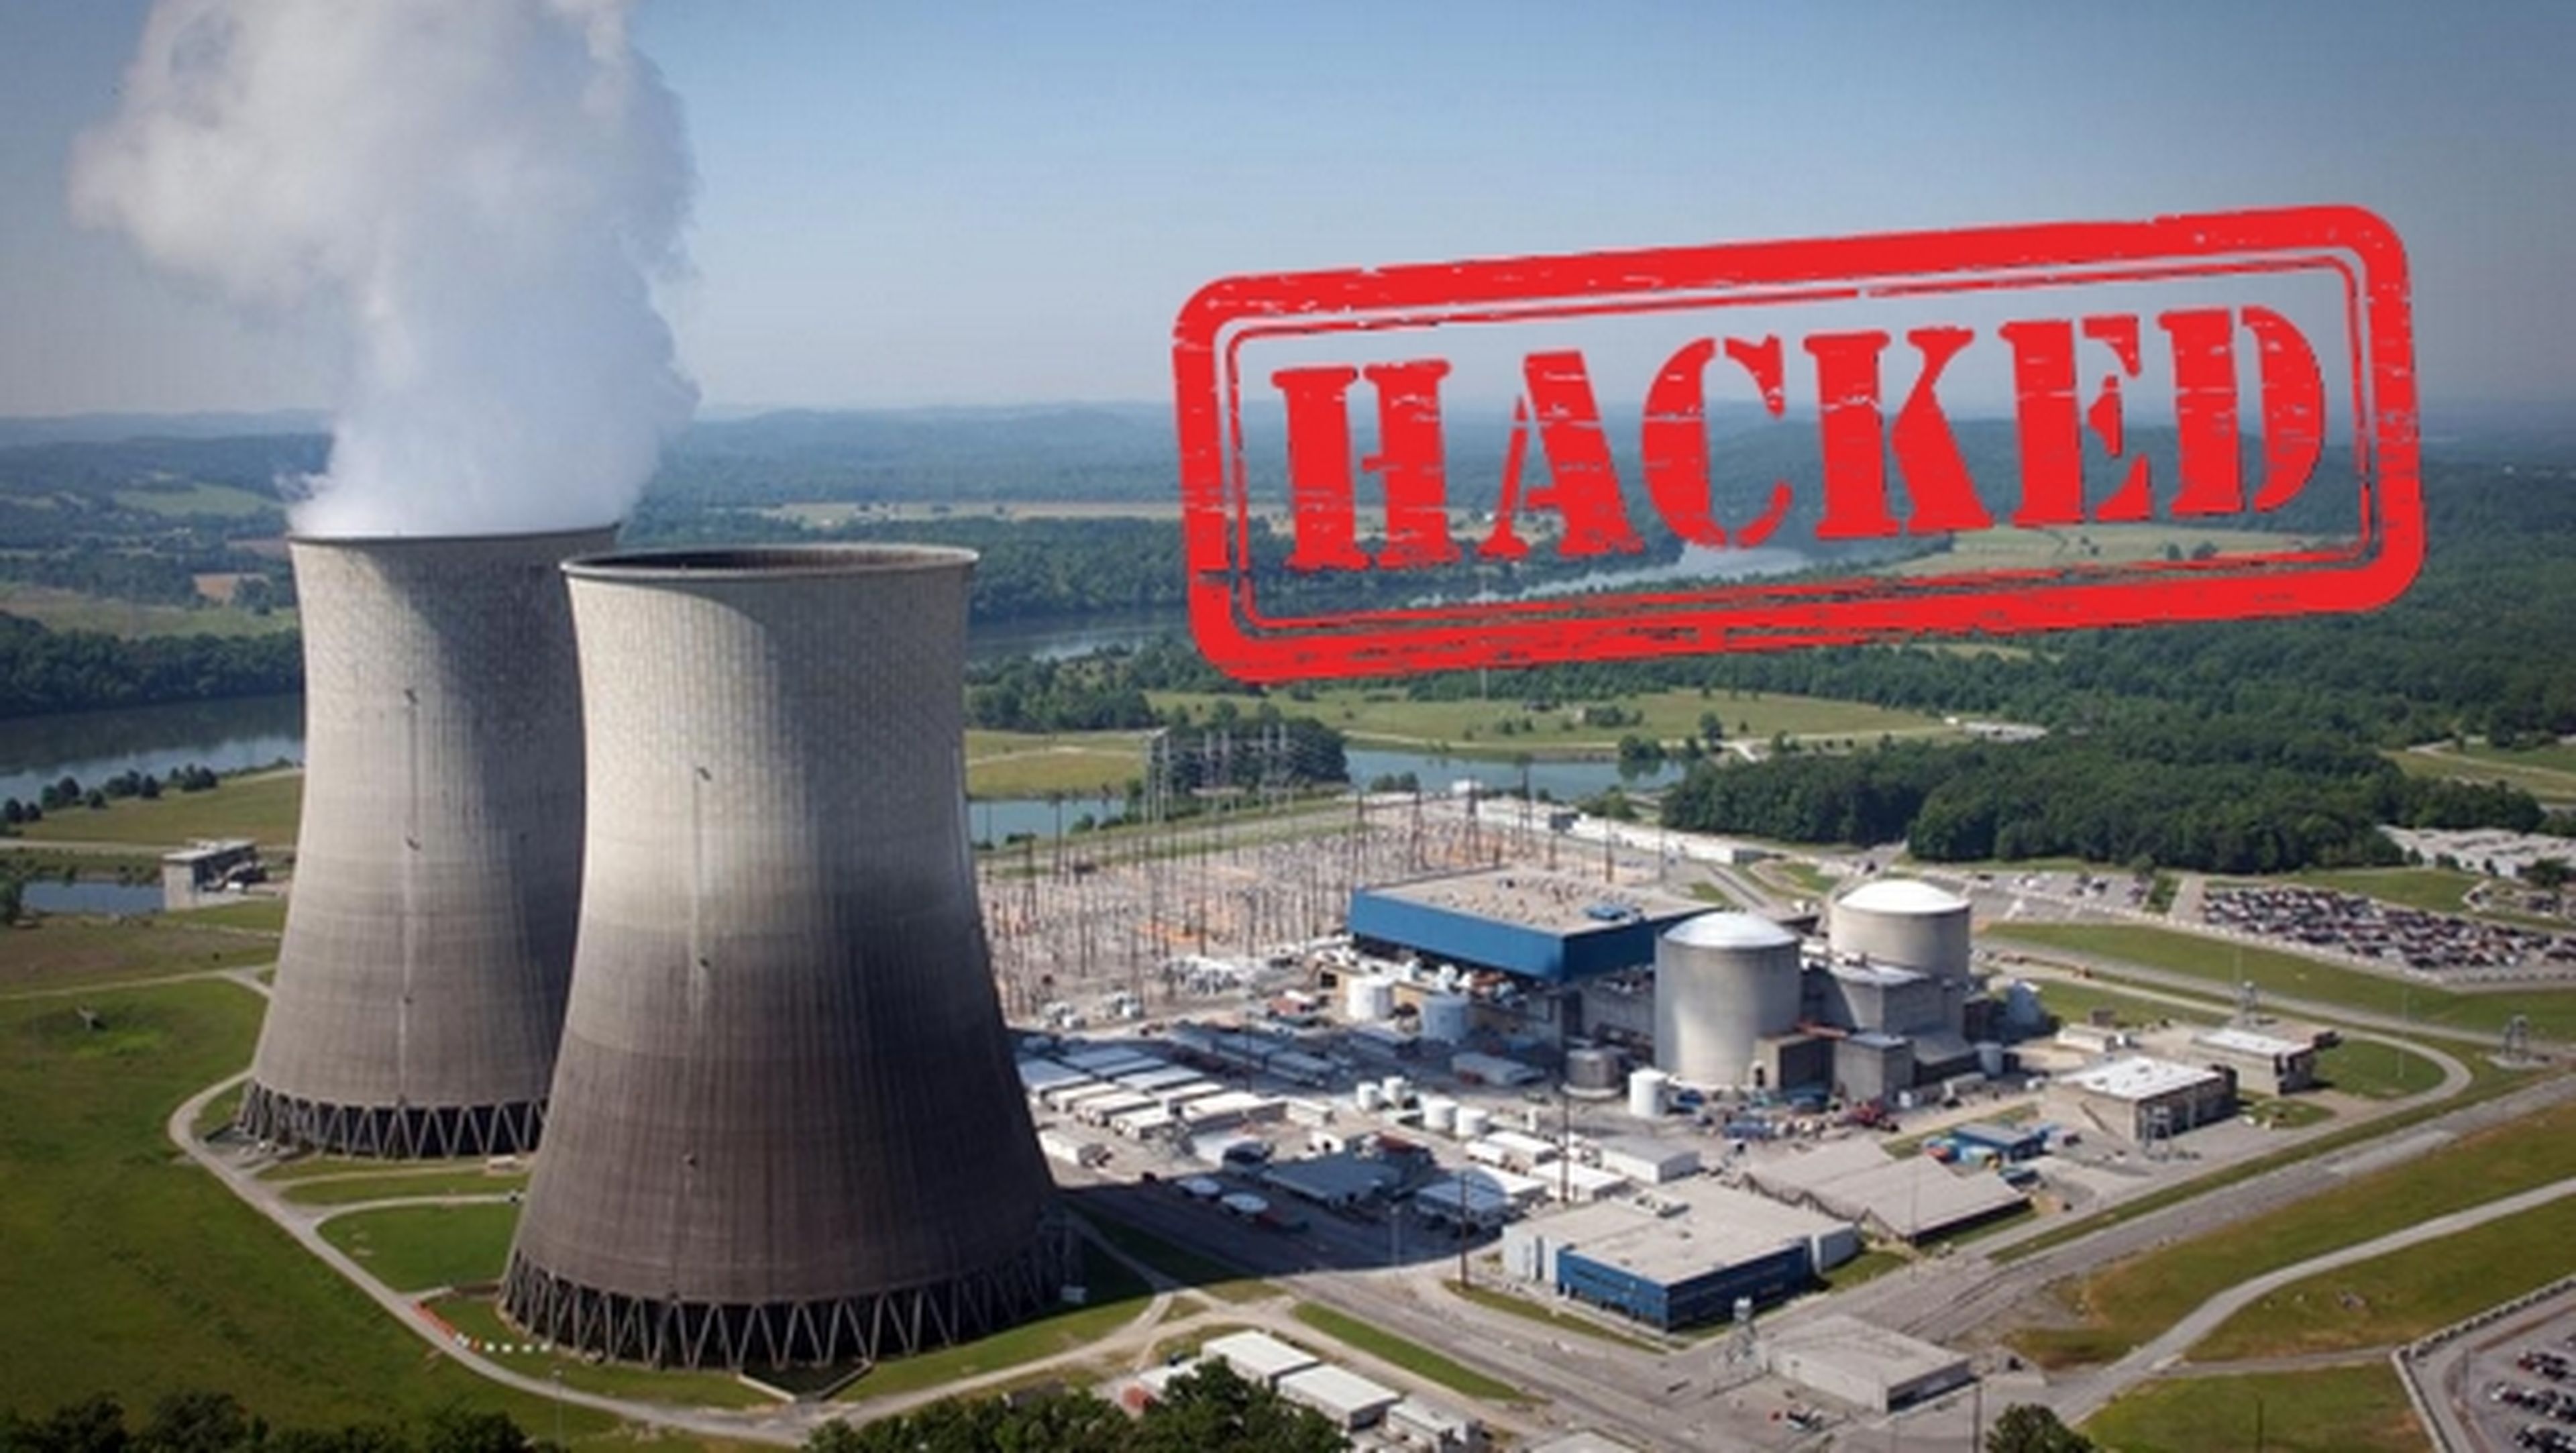 Confirman el hackeo de una central nuclear para robar uranio | Computer Hoy